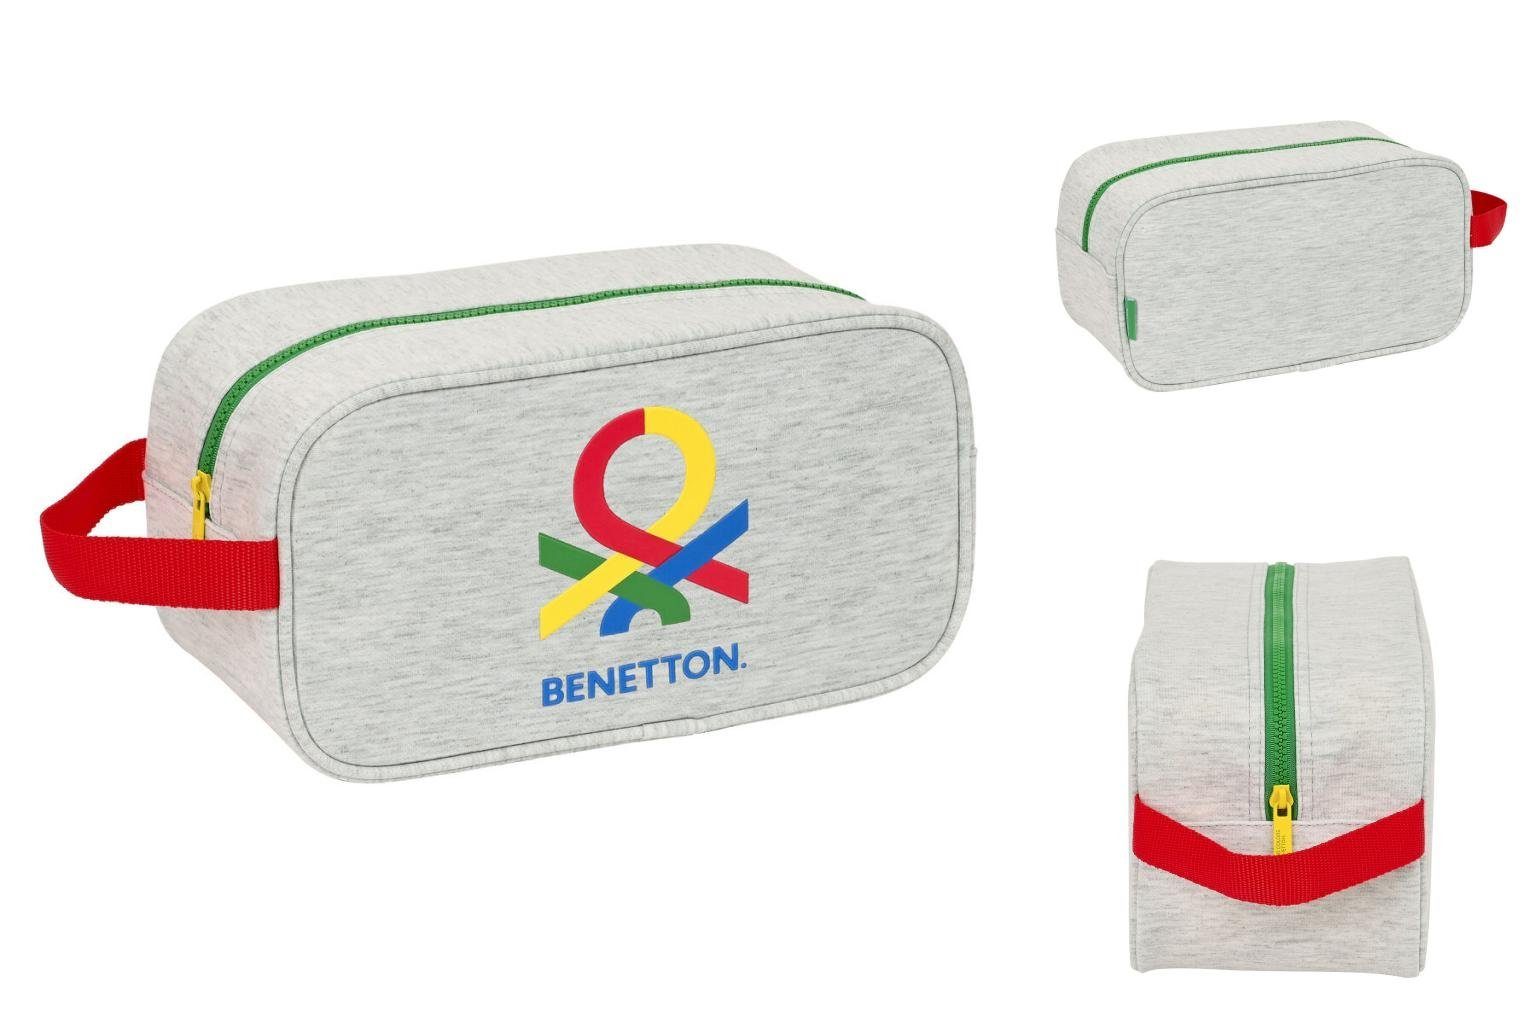 United Colors für of x x Benetton cm 29 Reise Benetton die 15 Pop Handtasche Schuhtasche Grau 14